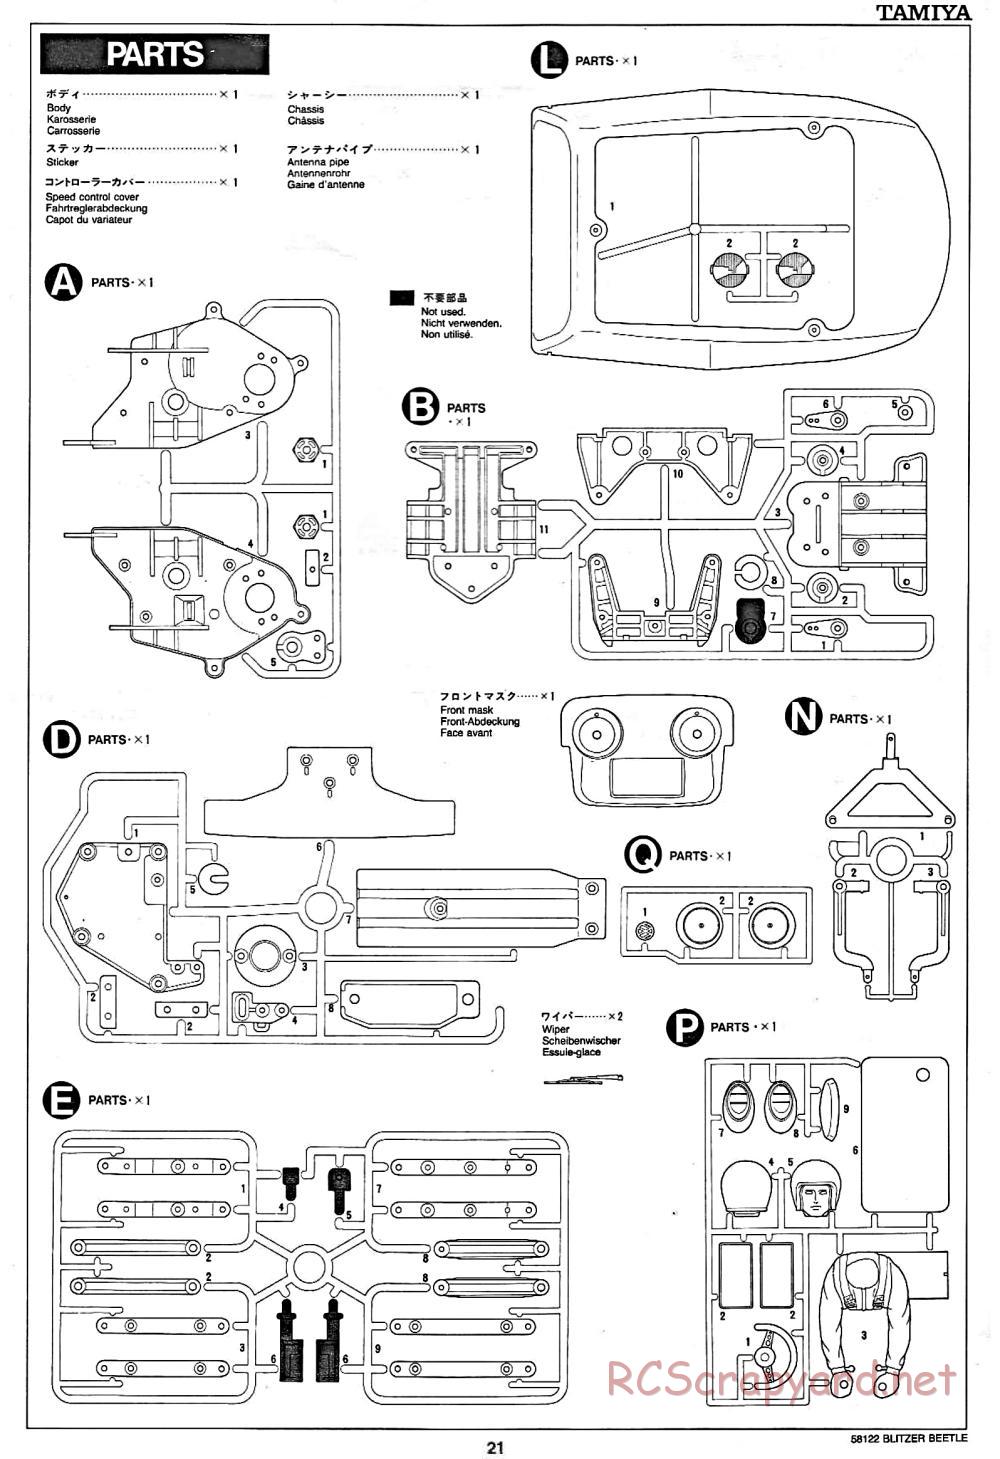 Tamiya - Blitzer Beetle Chassis - Manual - Page 21